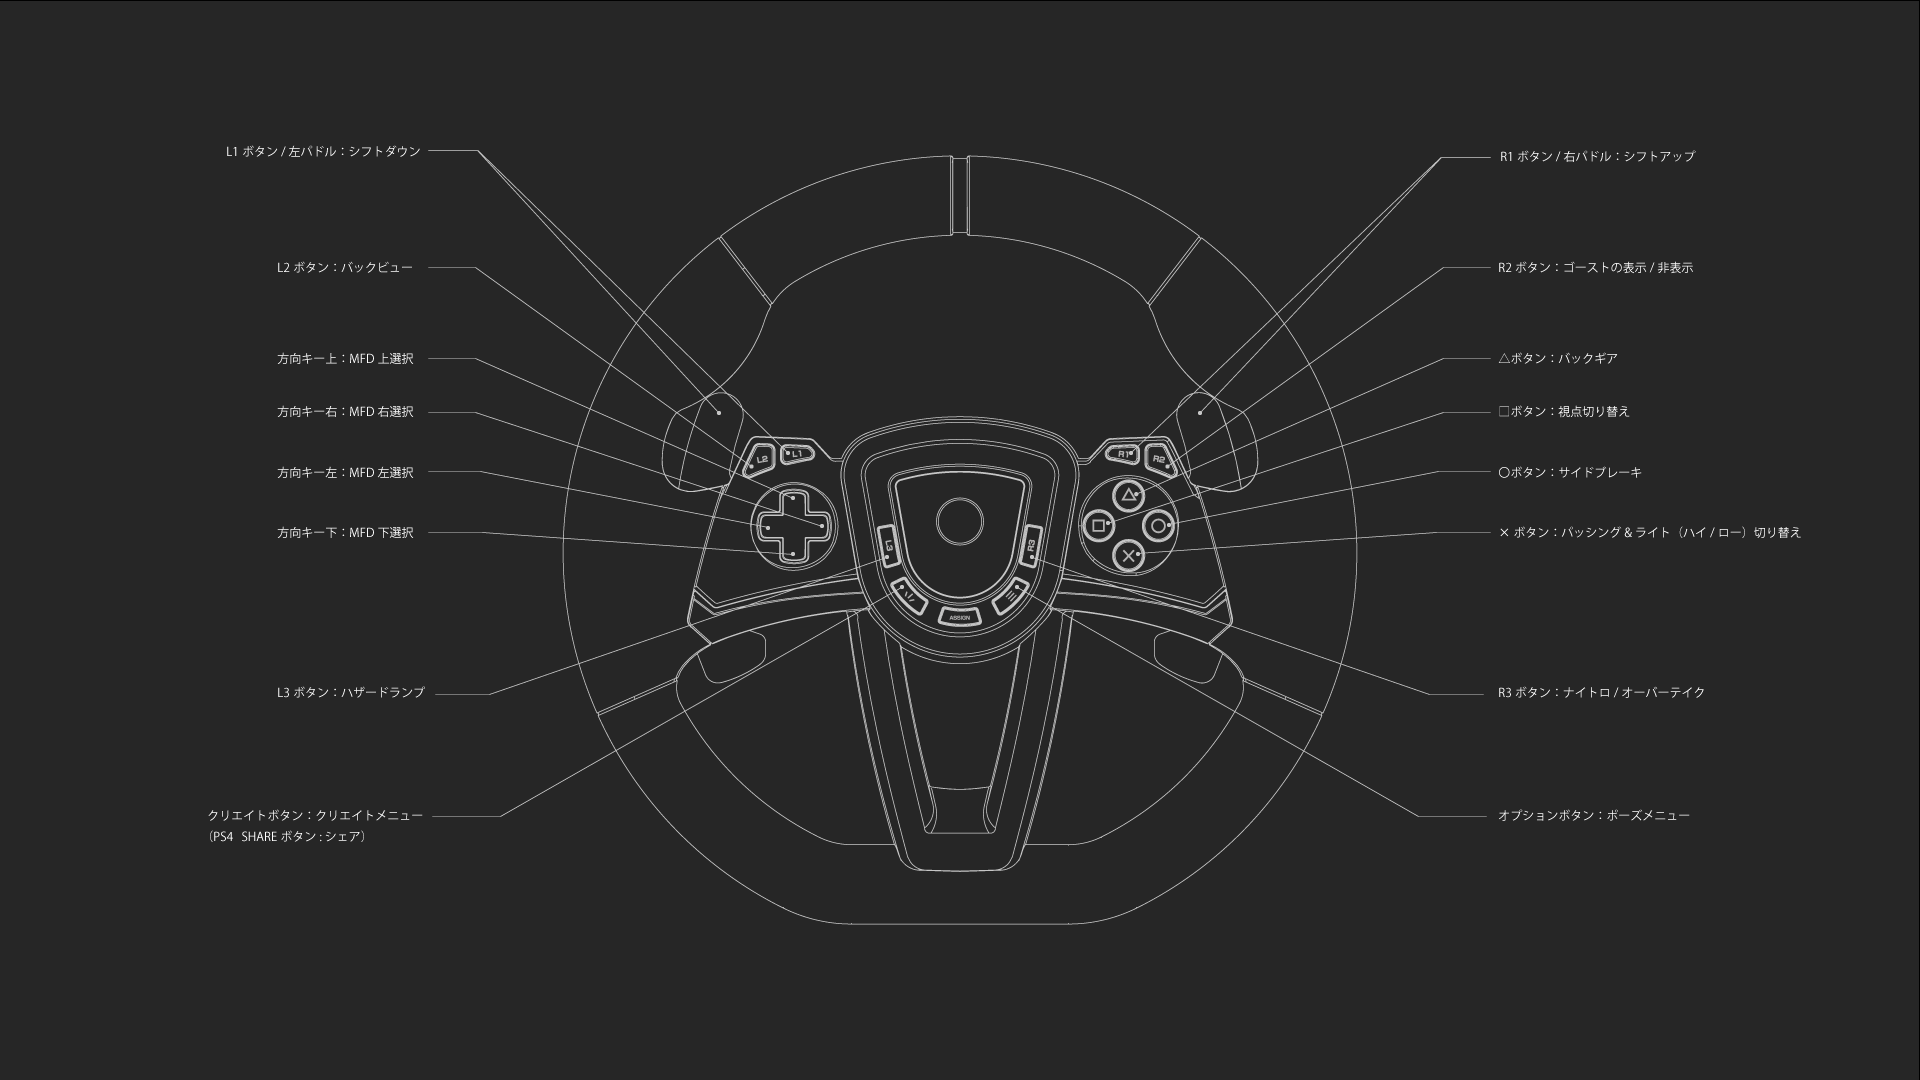 株式会社 HORI | PlayStation®5・PlayStation®4対応ステアリングコントローラーの、『グランツーリスモ7 』での操作方法を確認したい。